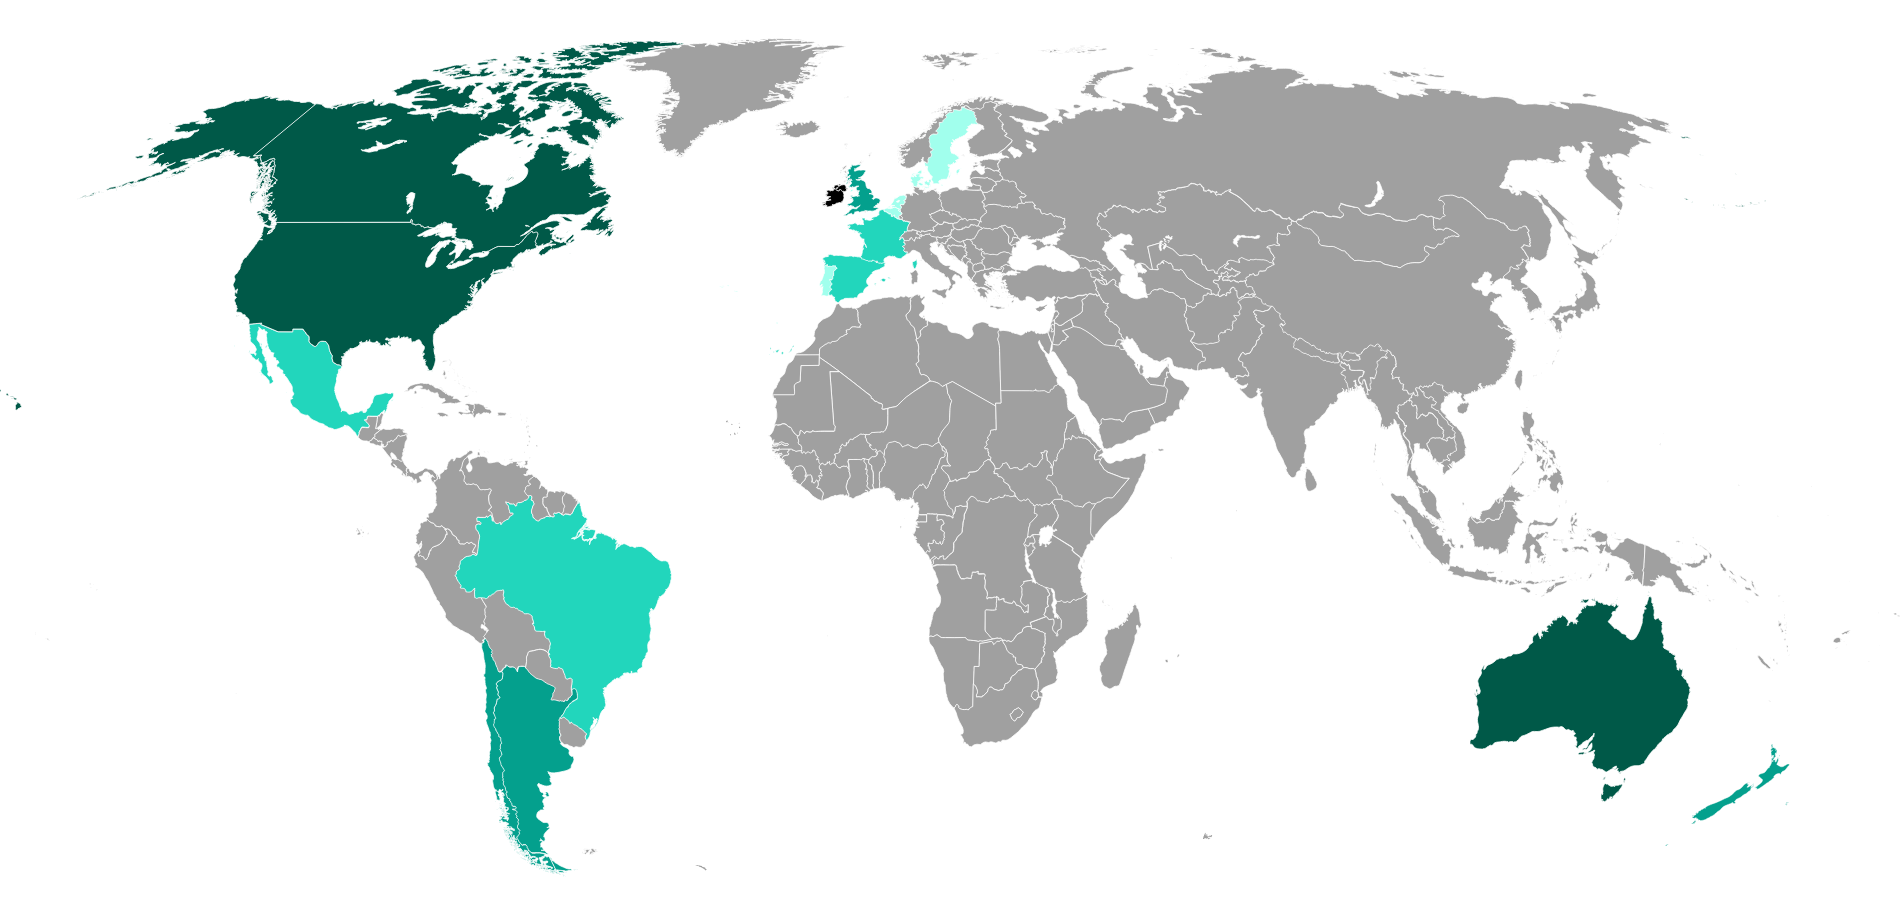 Mật độ phân bố người dân có gốc Ireland ở các nước trên thế giới, các màu xanh đậm thể hiện mật độ phân bố dày (Nguồn: Wikipedia)